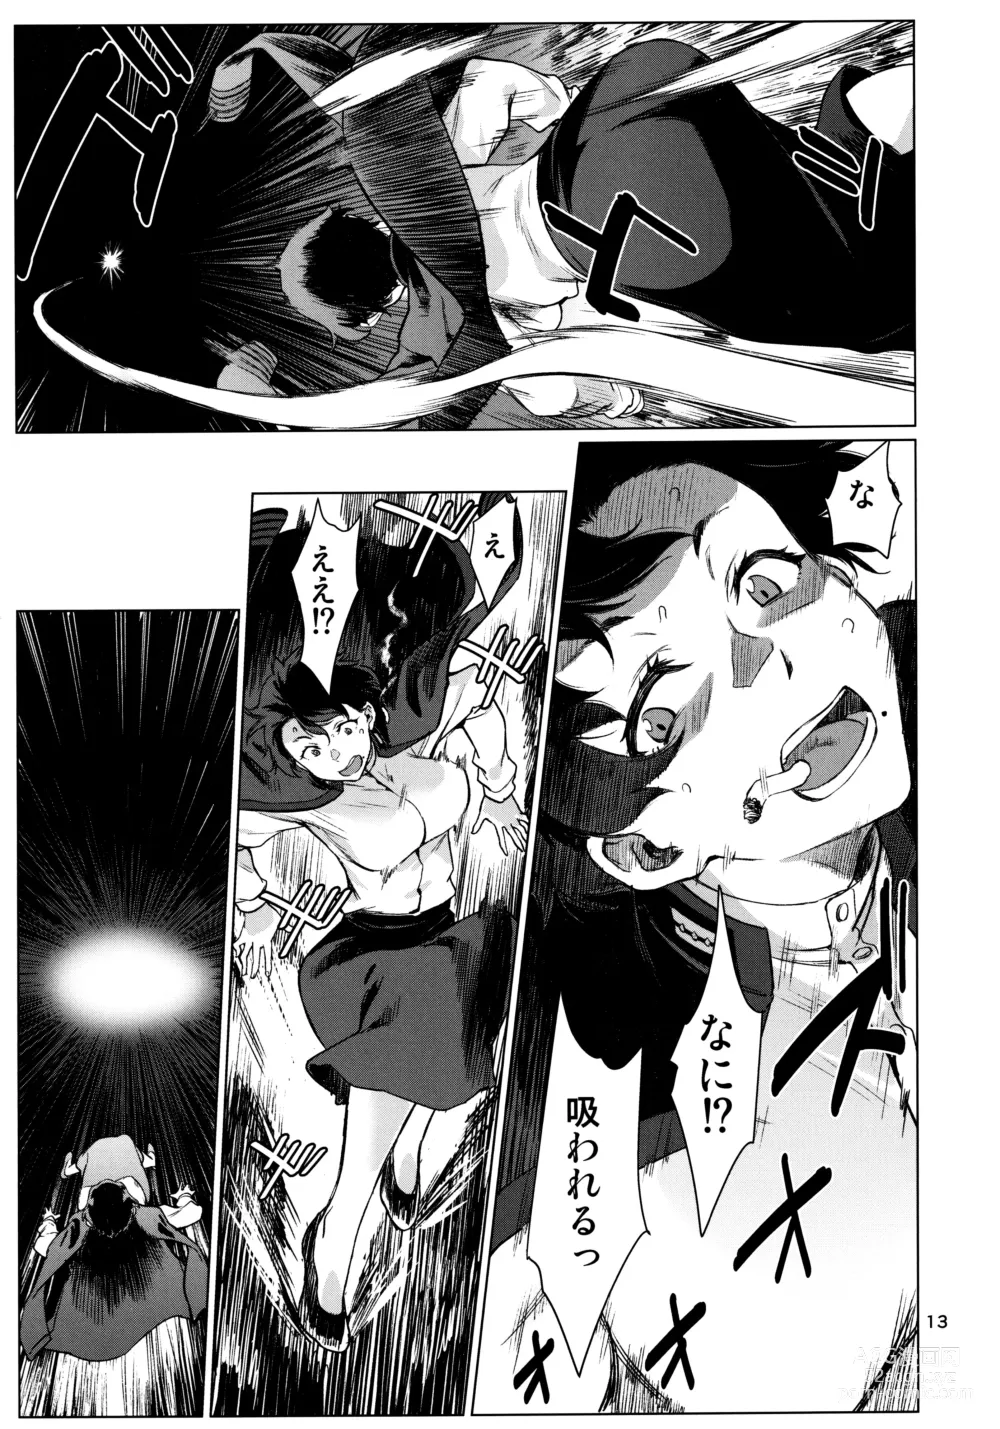 Page 13 of doujinshi Okuyukashi 2 Sasebo. Oominato Hen